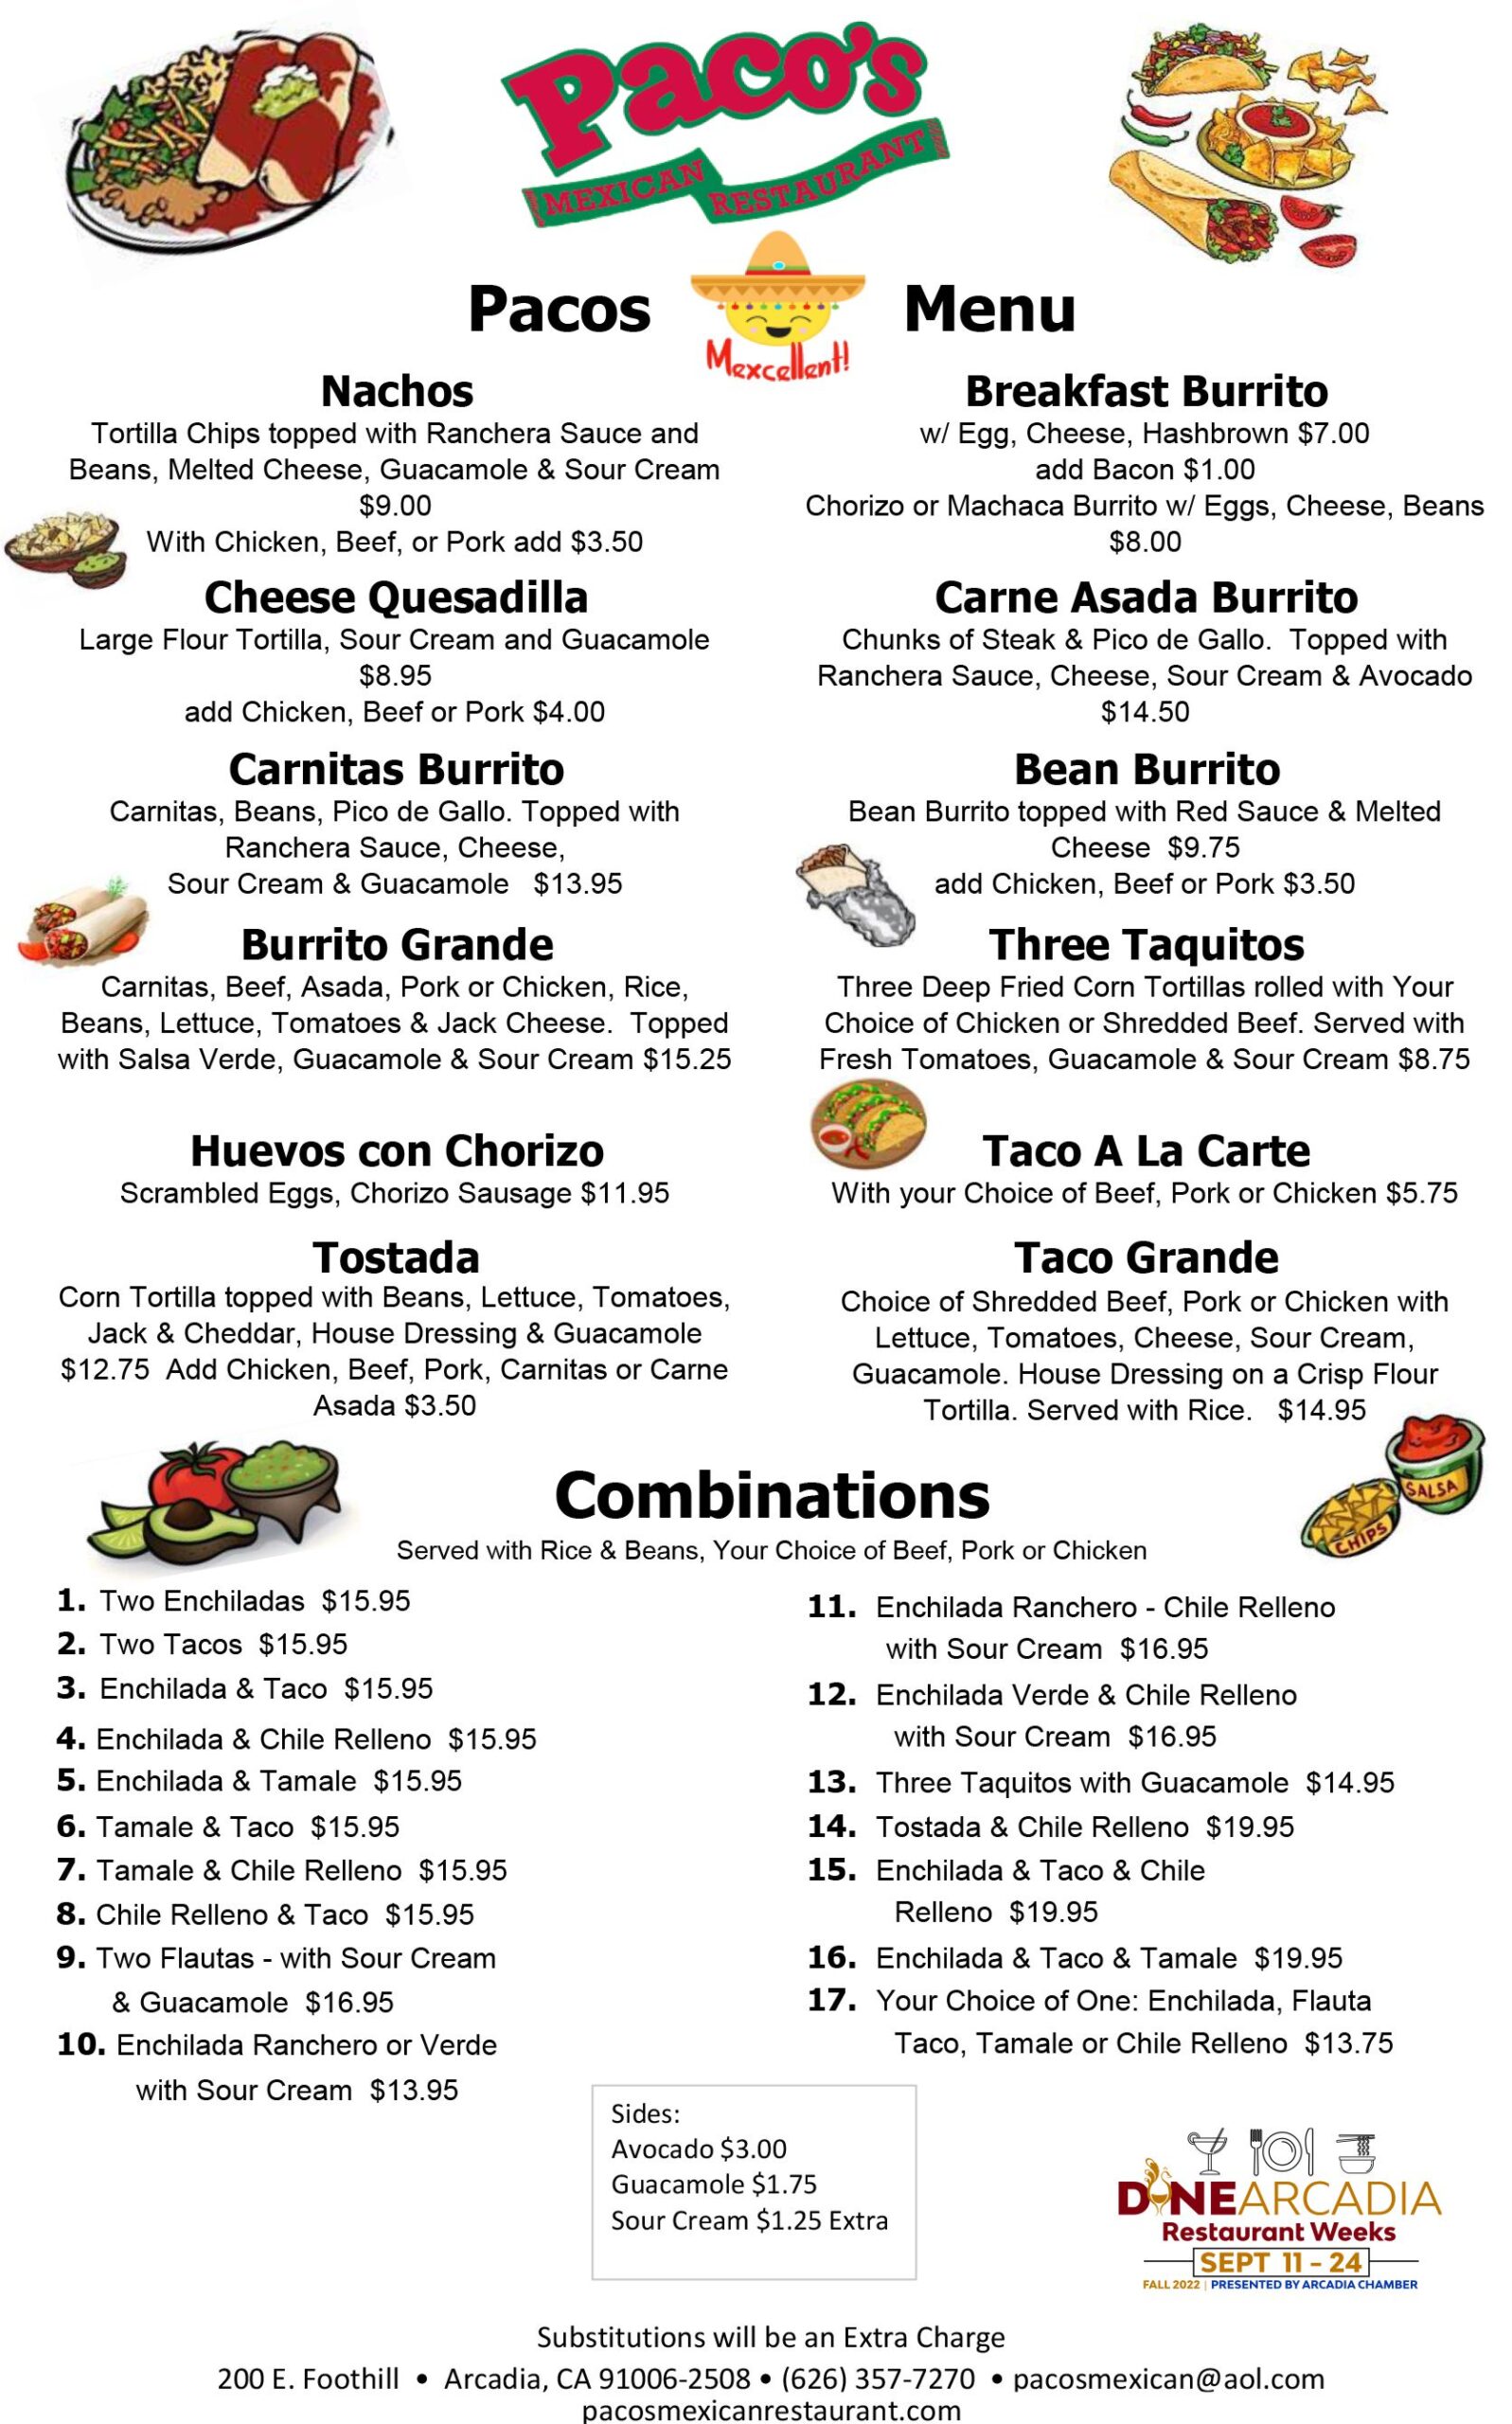 Paco's Dine Arcadia food menu